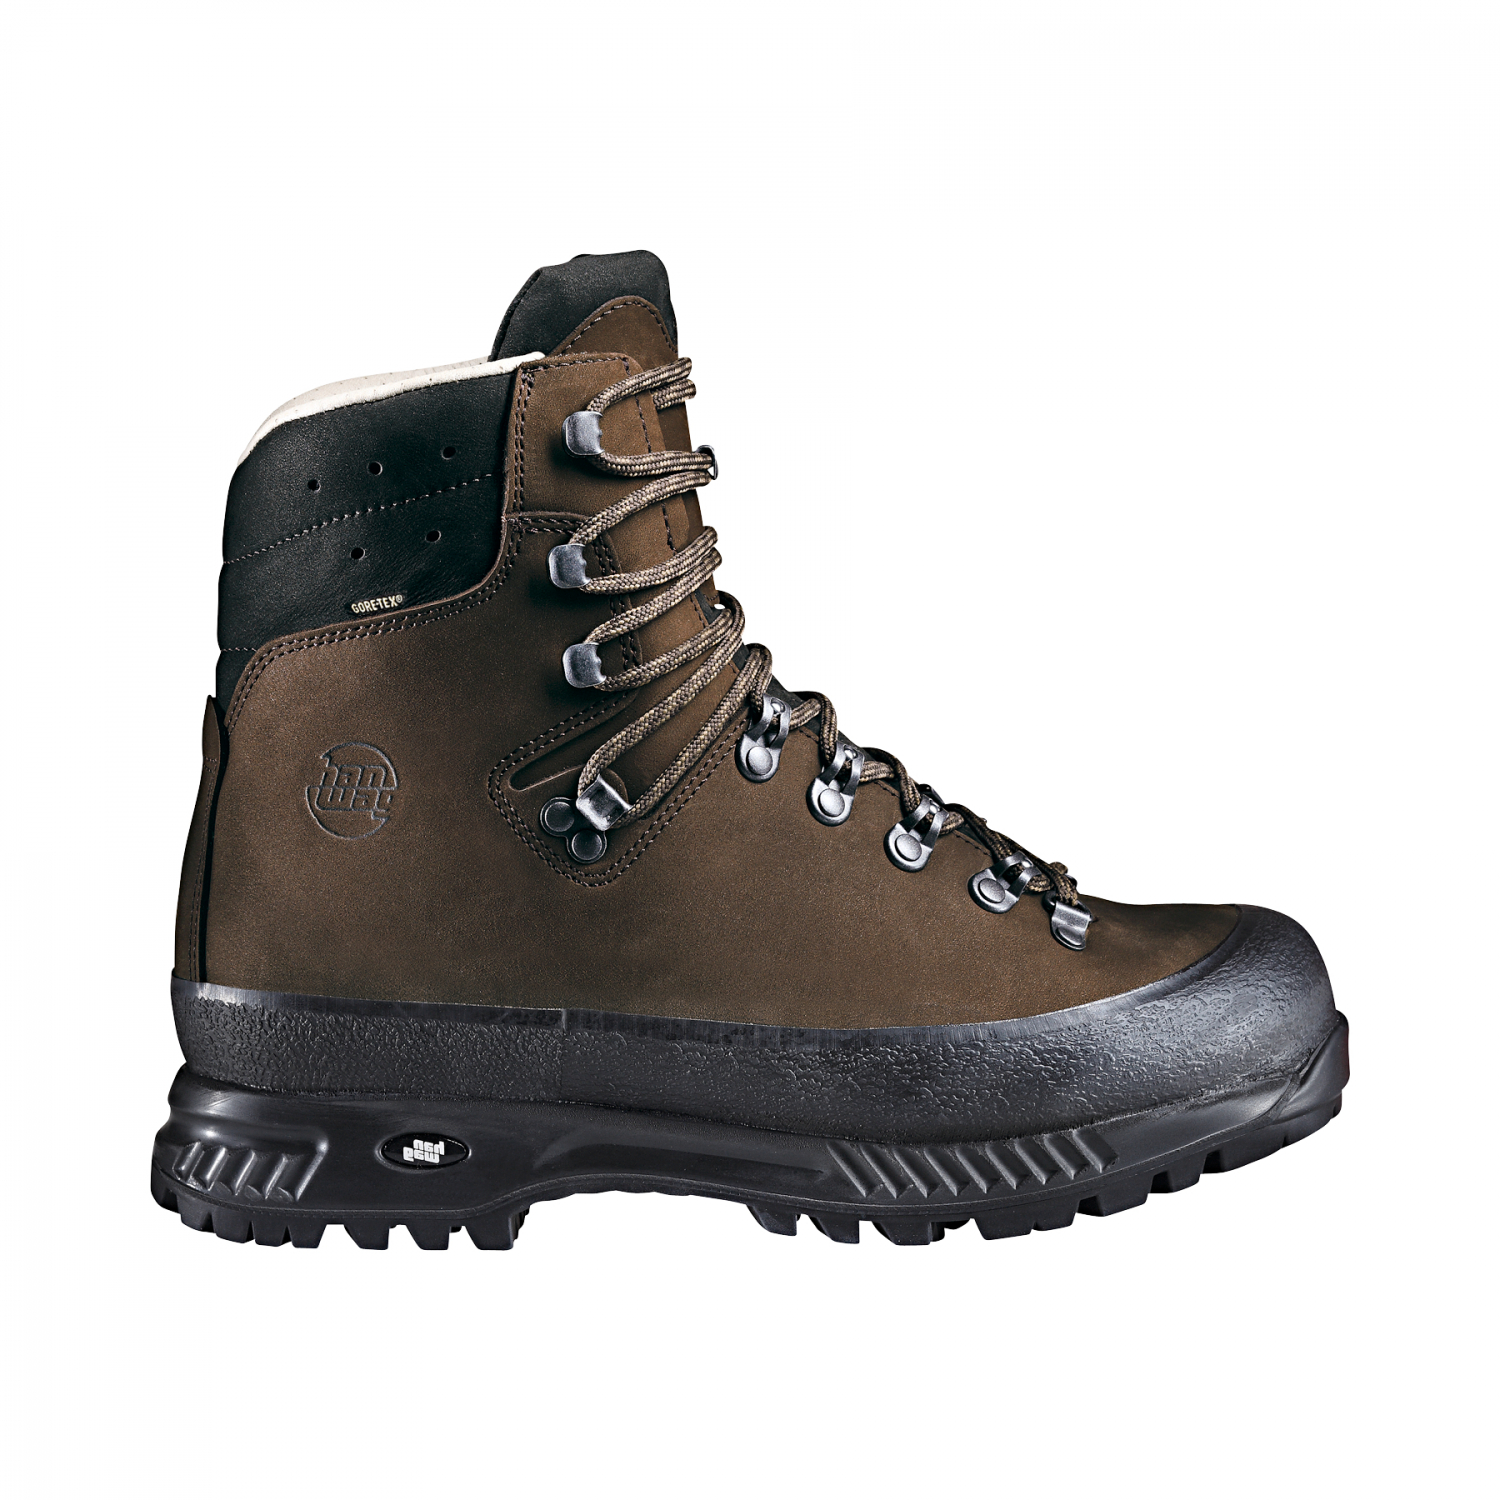 Hanwag Men's Outdoor Boots Alaska GTX Sz. 7 